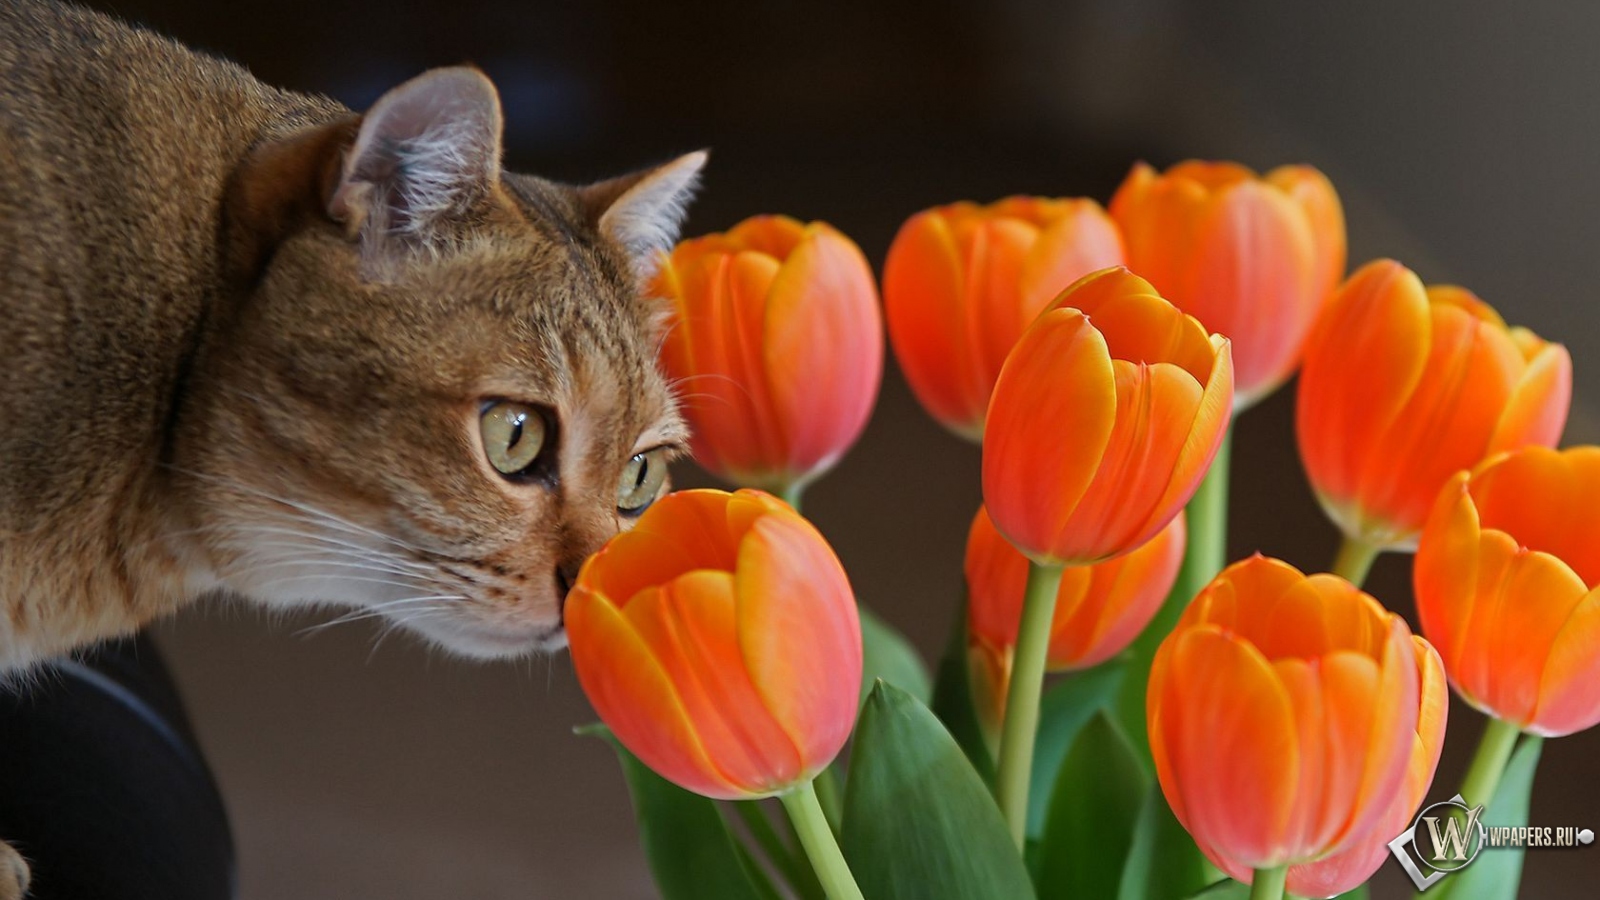 Кот с оранжевыми тюльпанами 1600x900